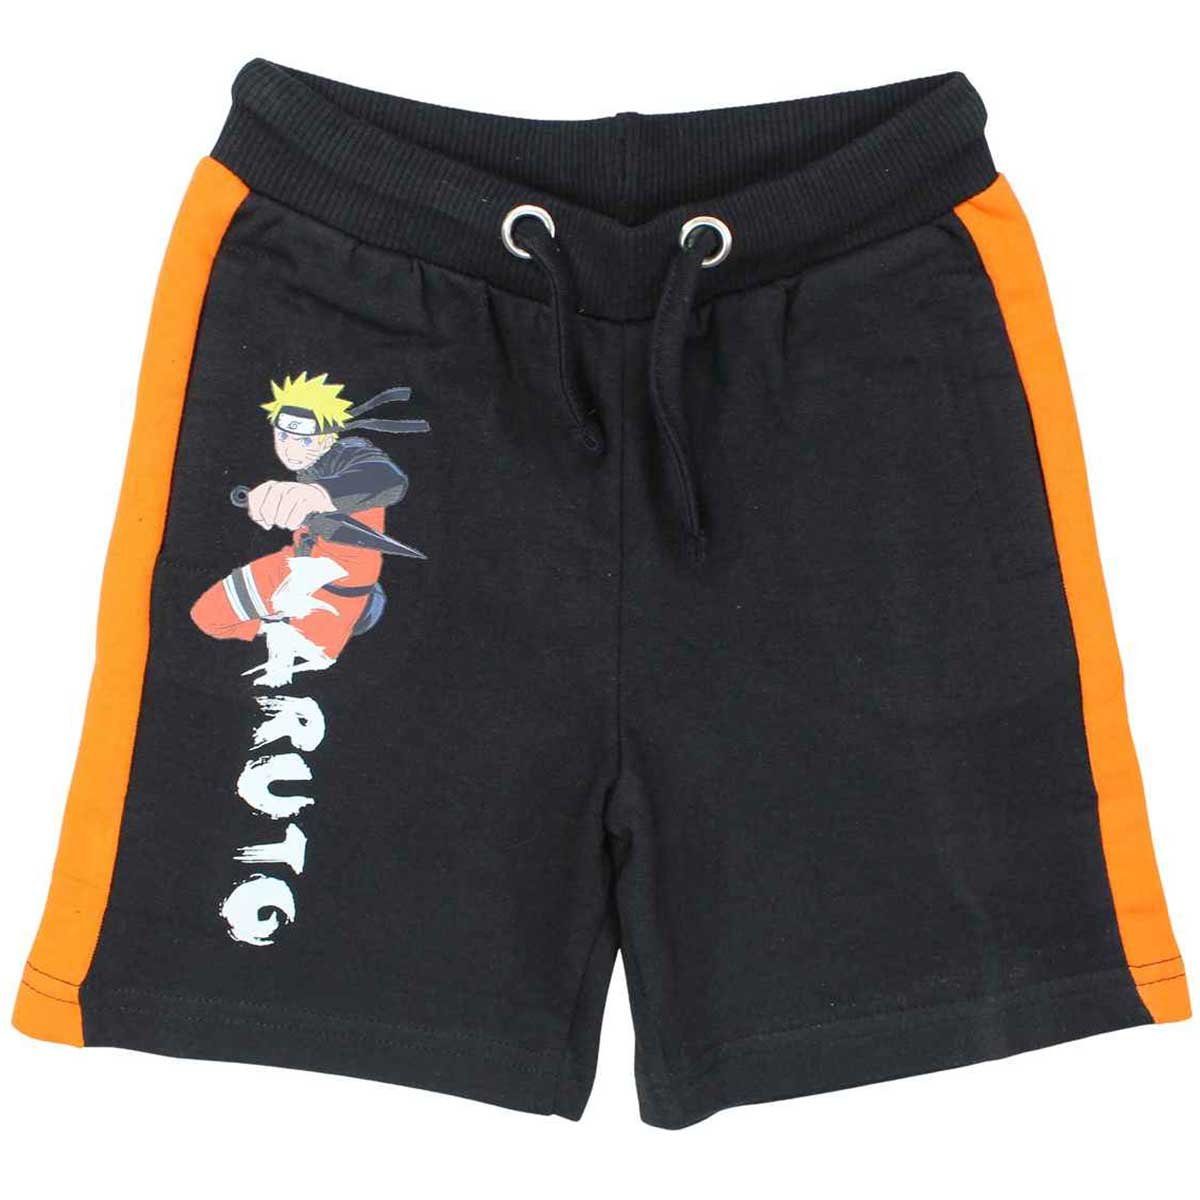 Naruto Shorts Naruto Shippuden Kinder Jungen Shorts 100% Baumwolle Gr. 110 bis 152 Schwarz | Sportshorts